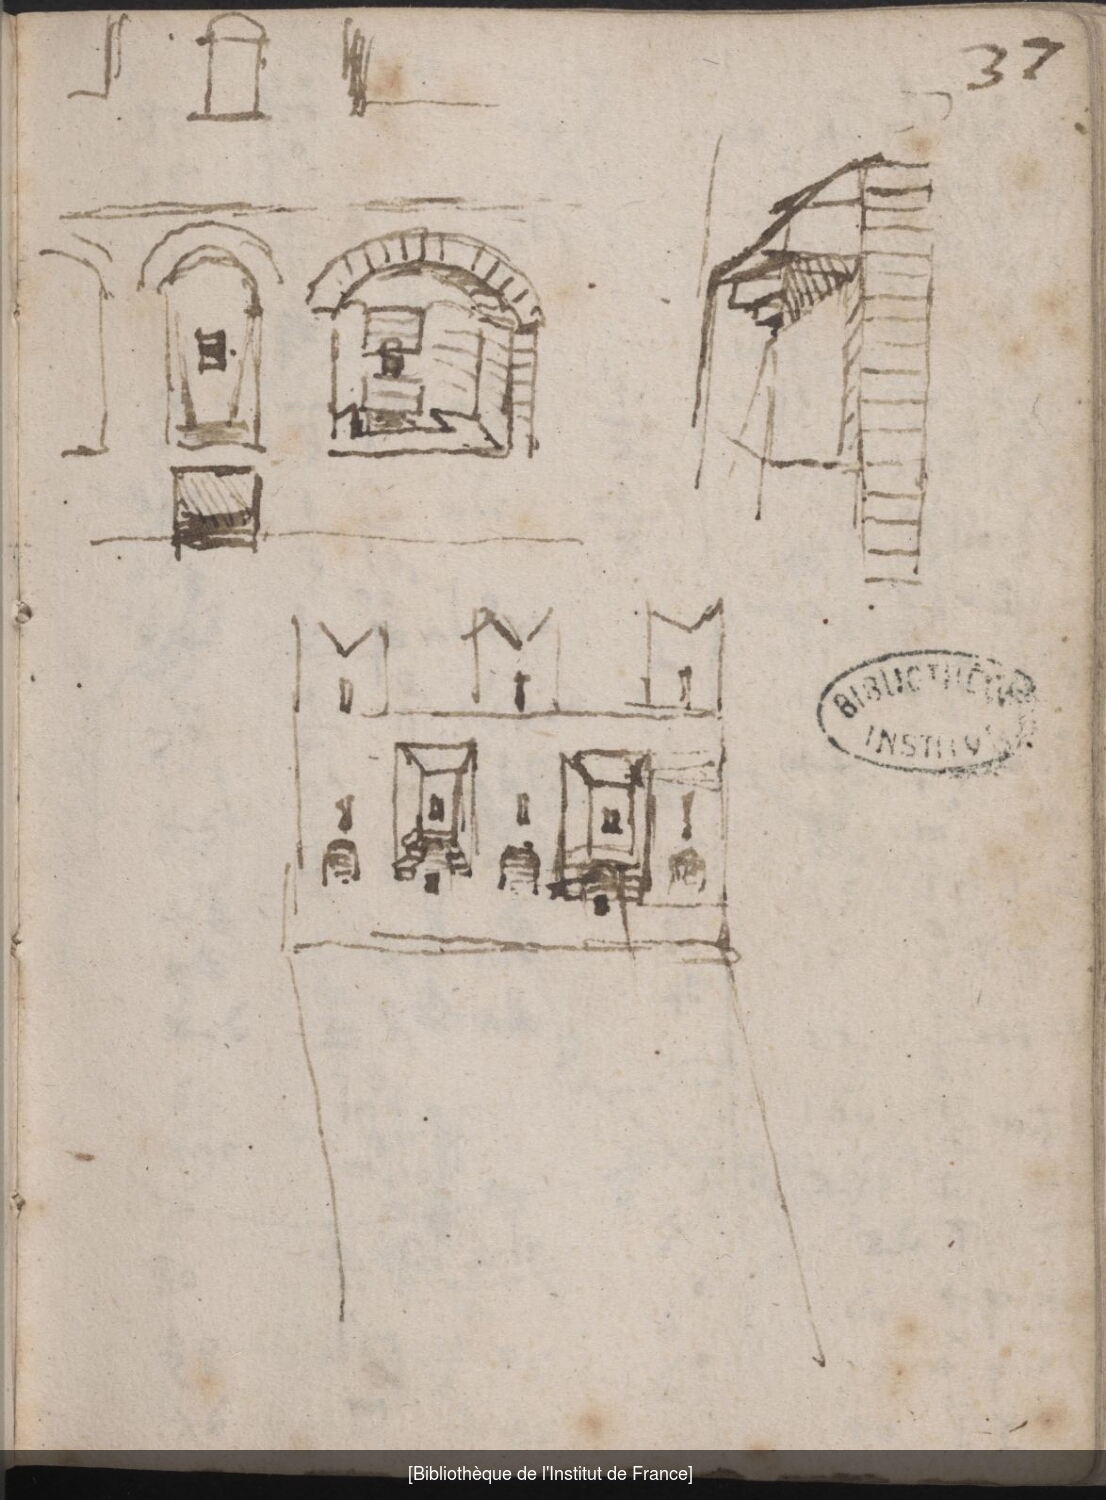 Ms 2182 (manuscrit L), f. 36v, dessins de rempart crénelé, de meurtrières et de mâchicoulis. Ms 2182 (manuscrit L), f. 37r, dessins de rempart crénelé, de meurtrières et de mâchicoulis.